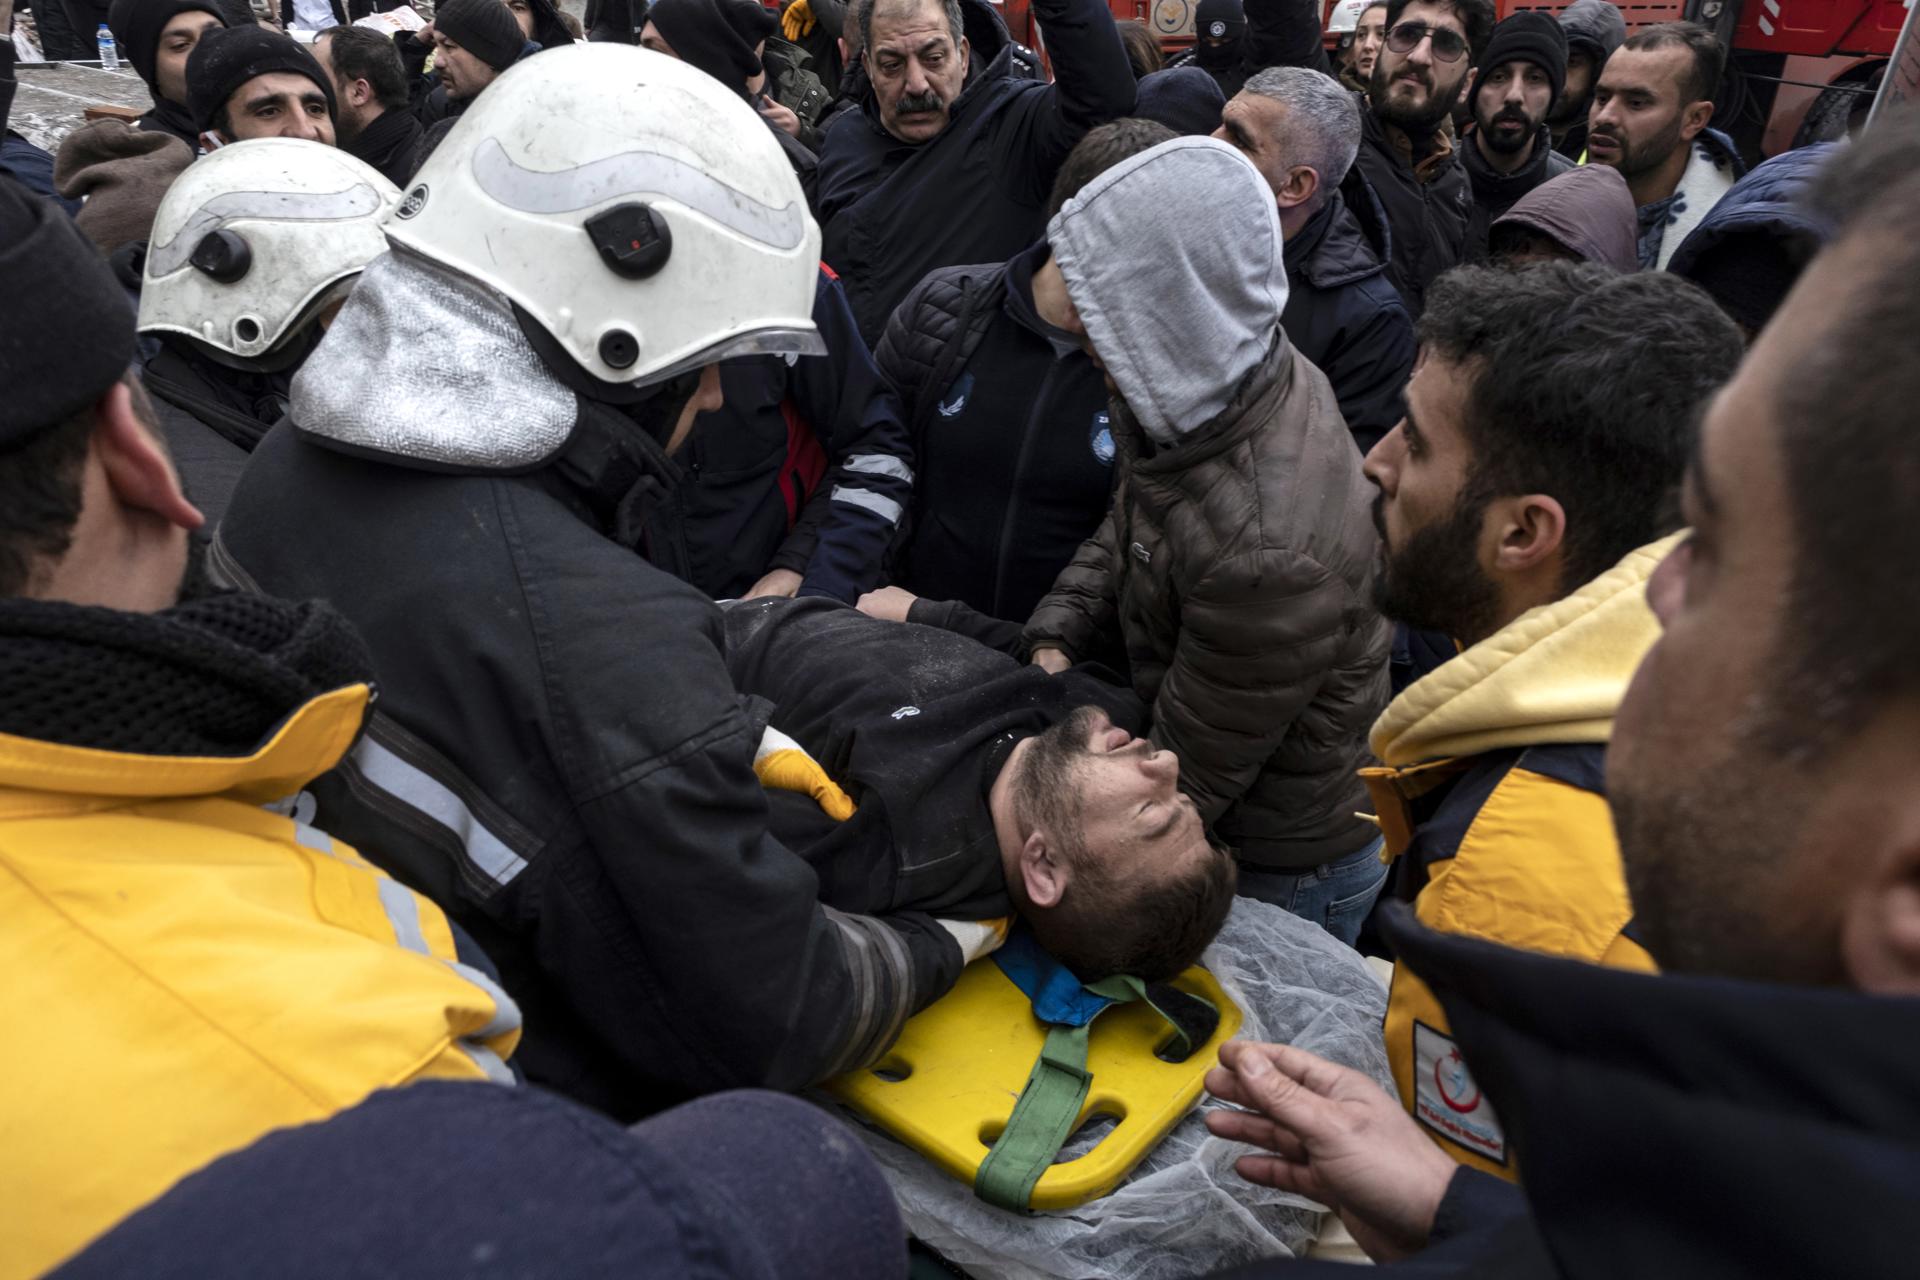 Els supervivents del terratrèmol a Turquia relaten l'horror: "He pensat que almenys moriríem junts"